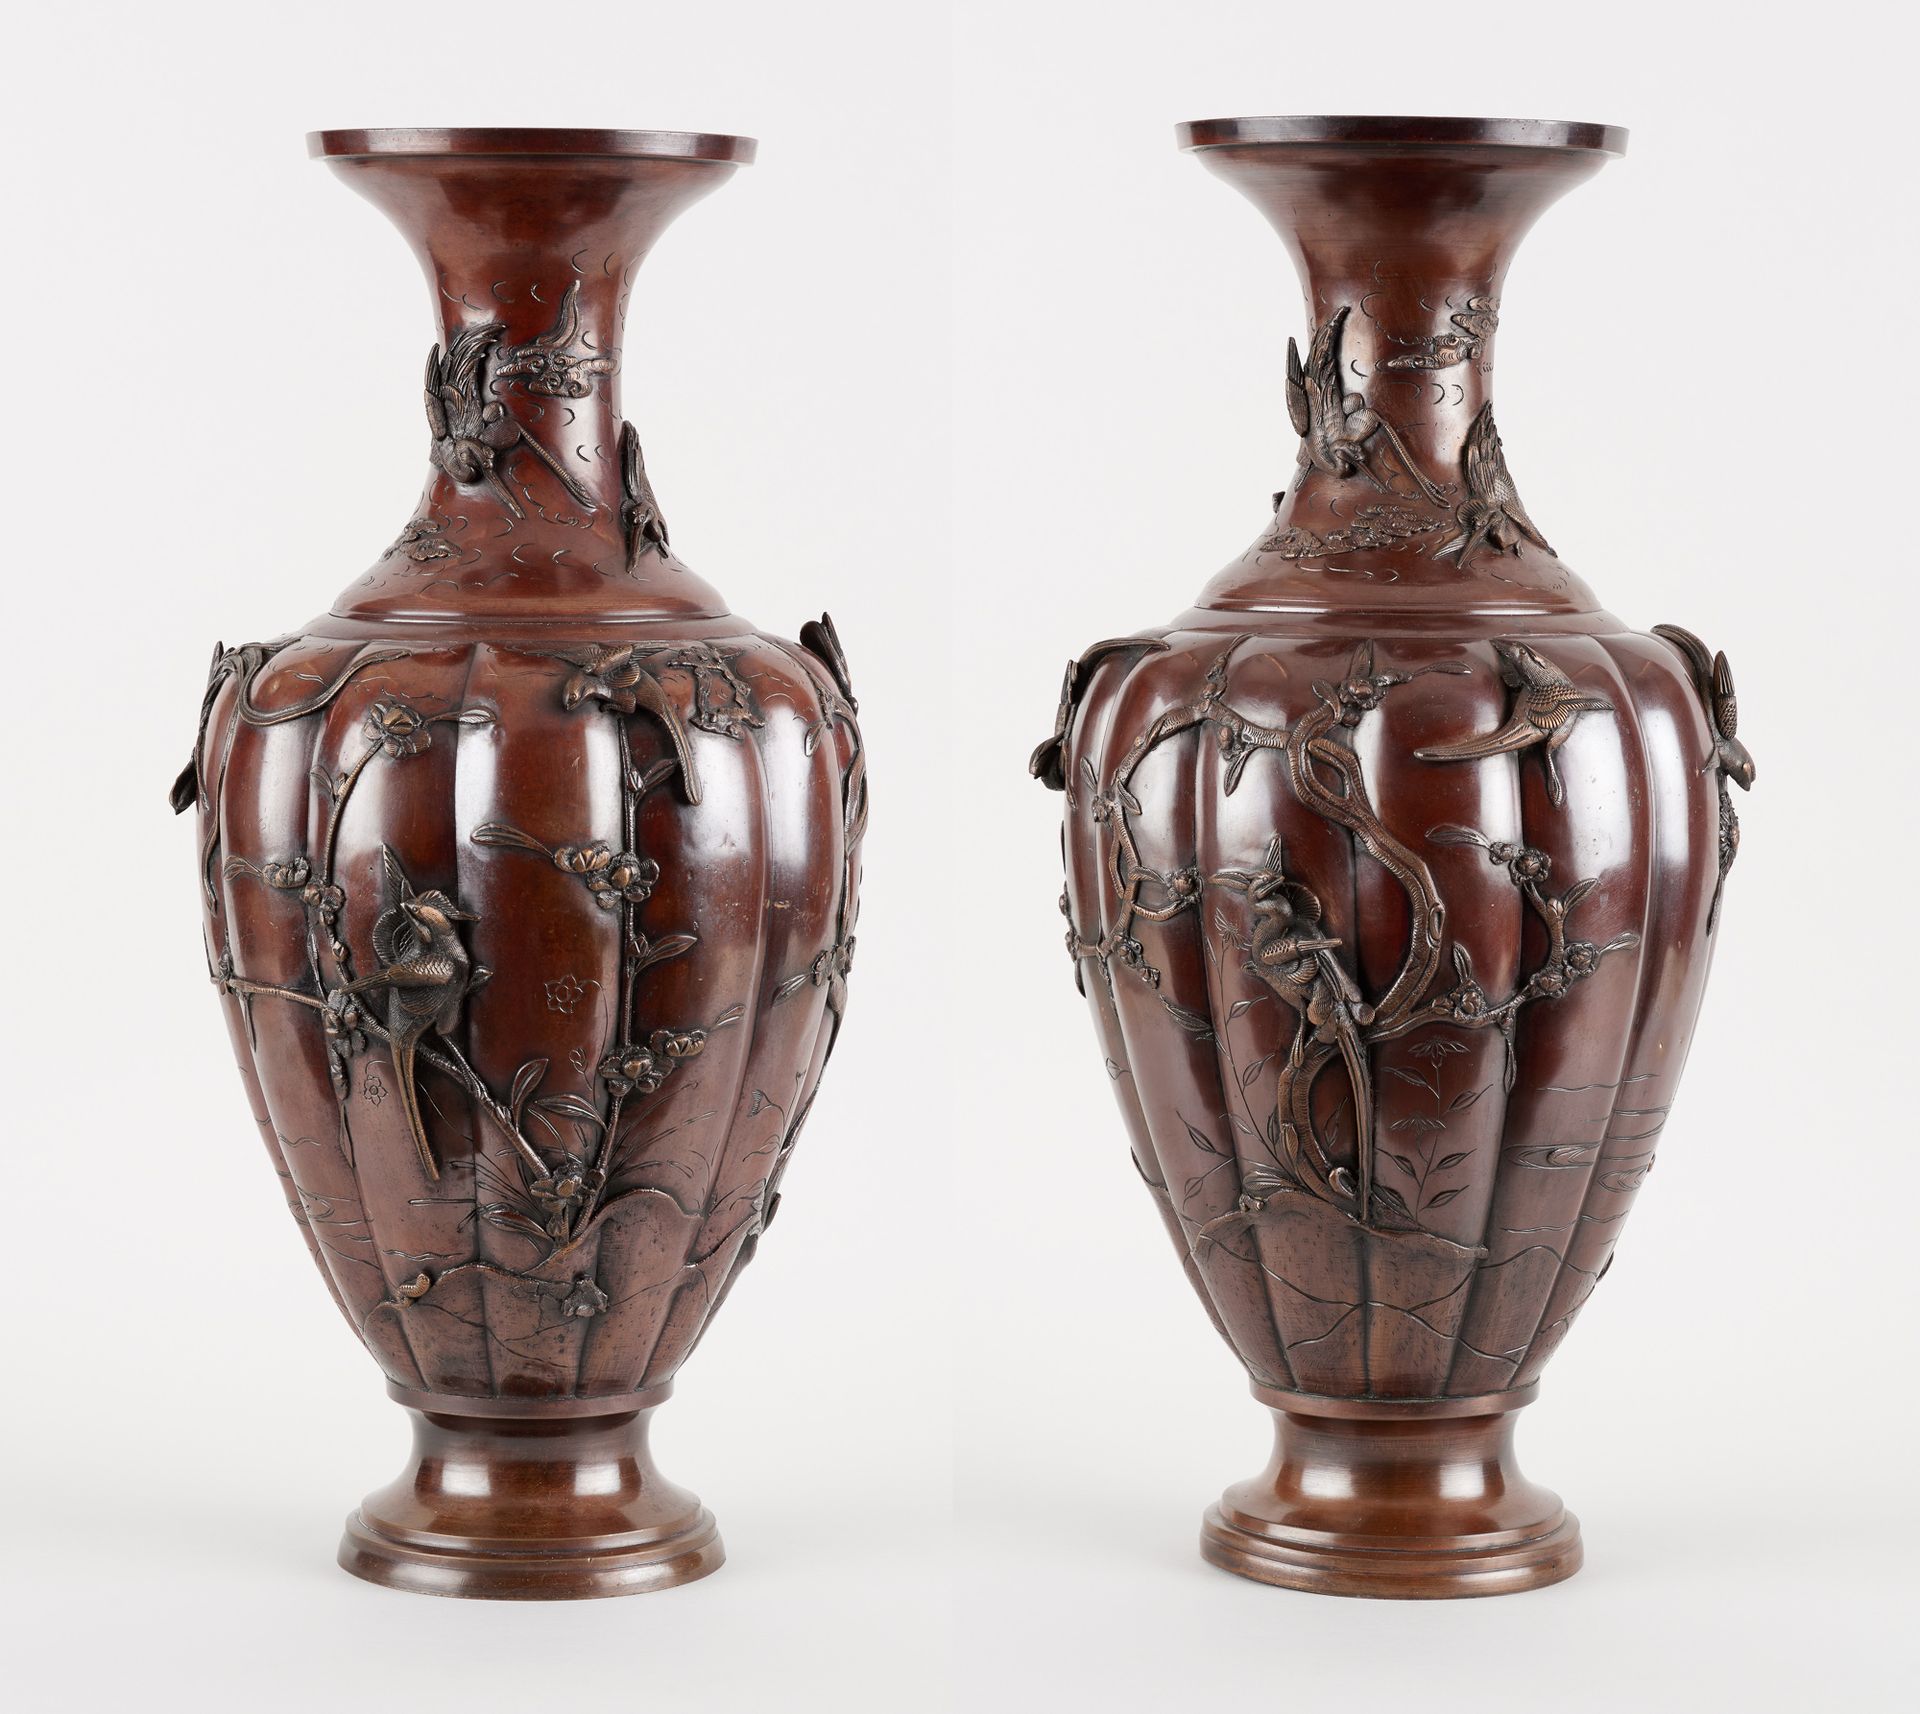 Travail asiatique. 棕色铜质雕塑（一套两件）。一对高浮雕苍鹭、天堂鸟和鹦鹉的花瓶。

在作品下签有字。

尺寸：高61.5厘米。